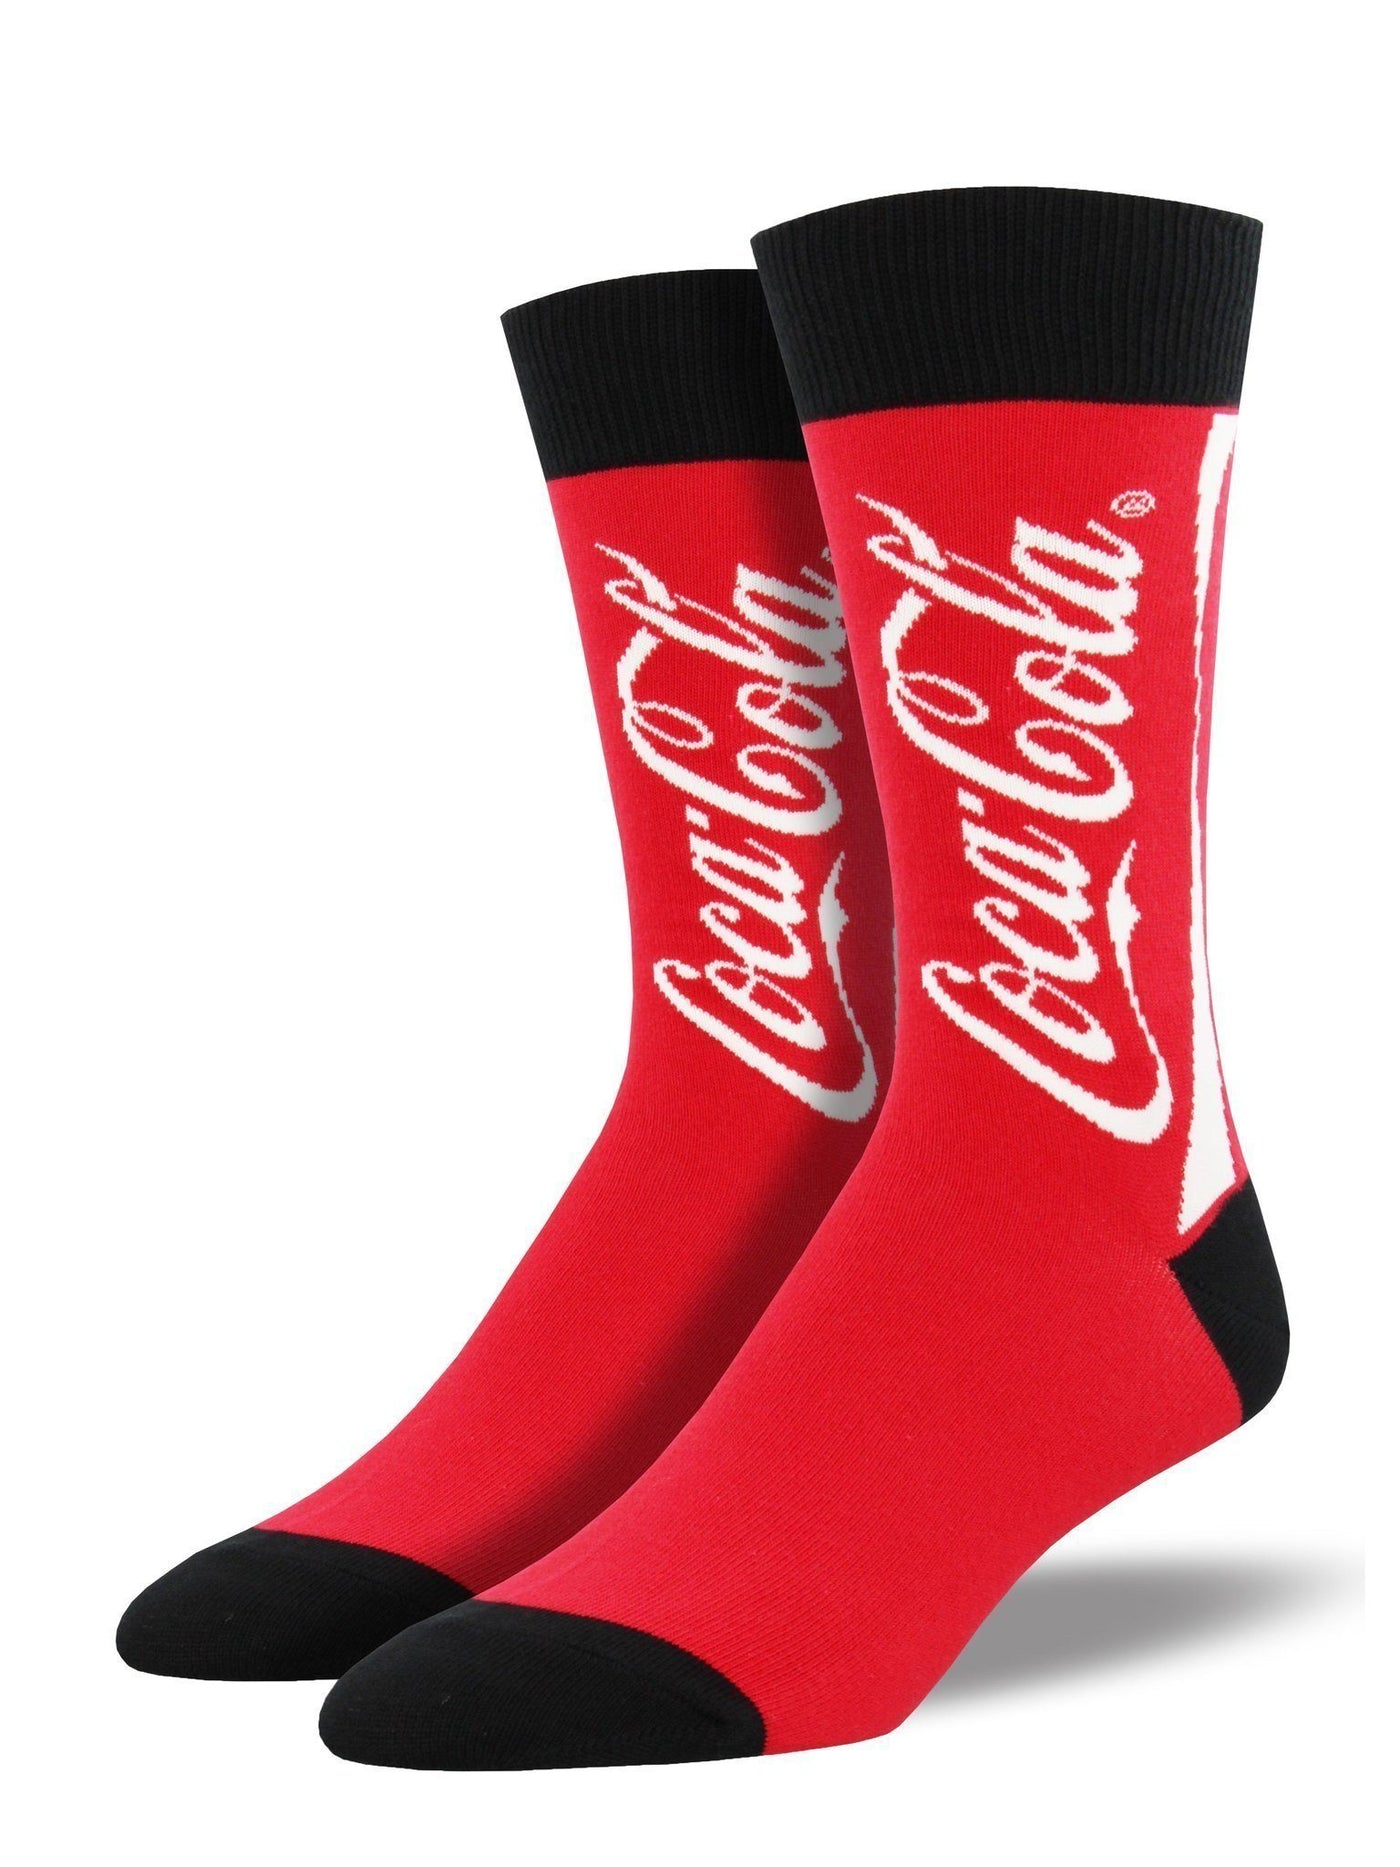 Socksmith - Coca-Cola Crew Socks | Men's - Knock Your Socks Off